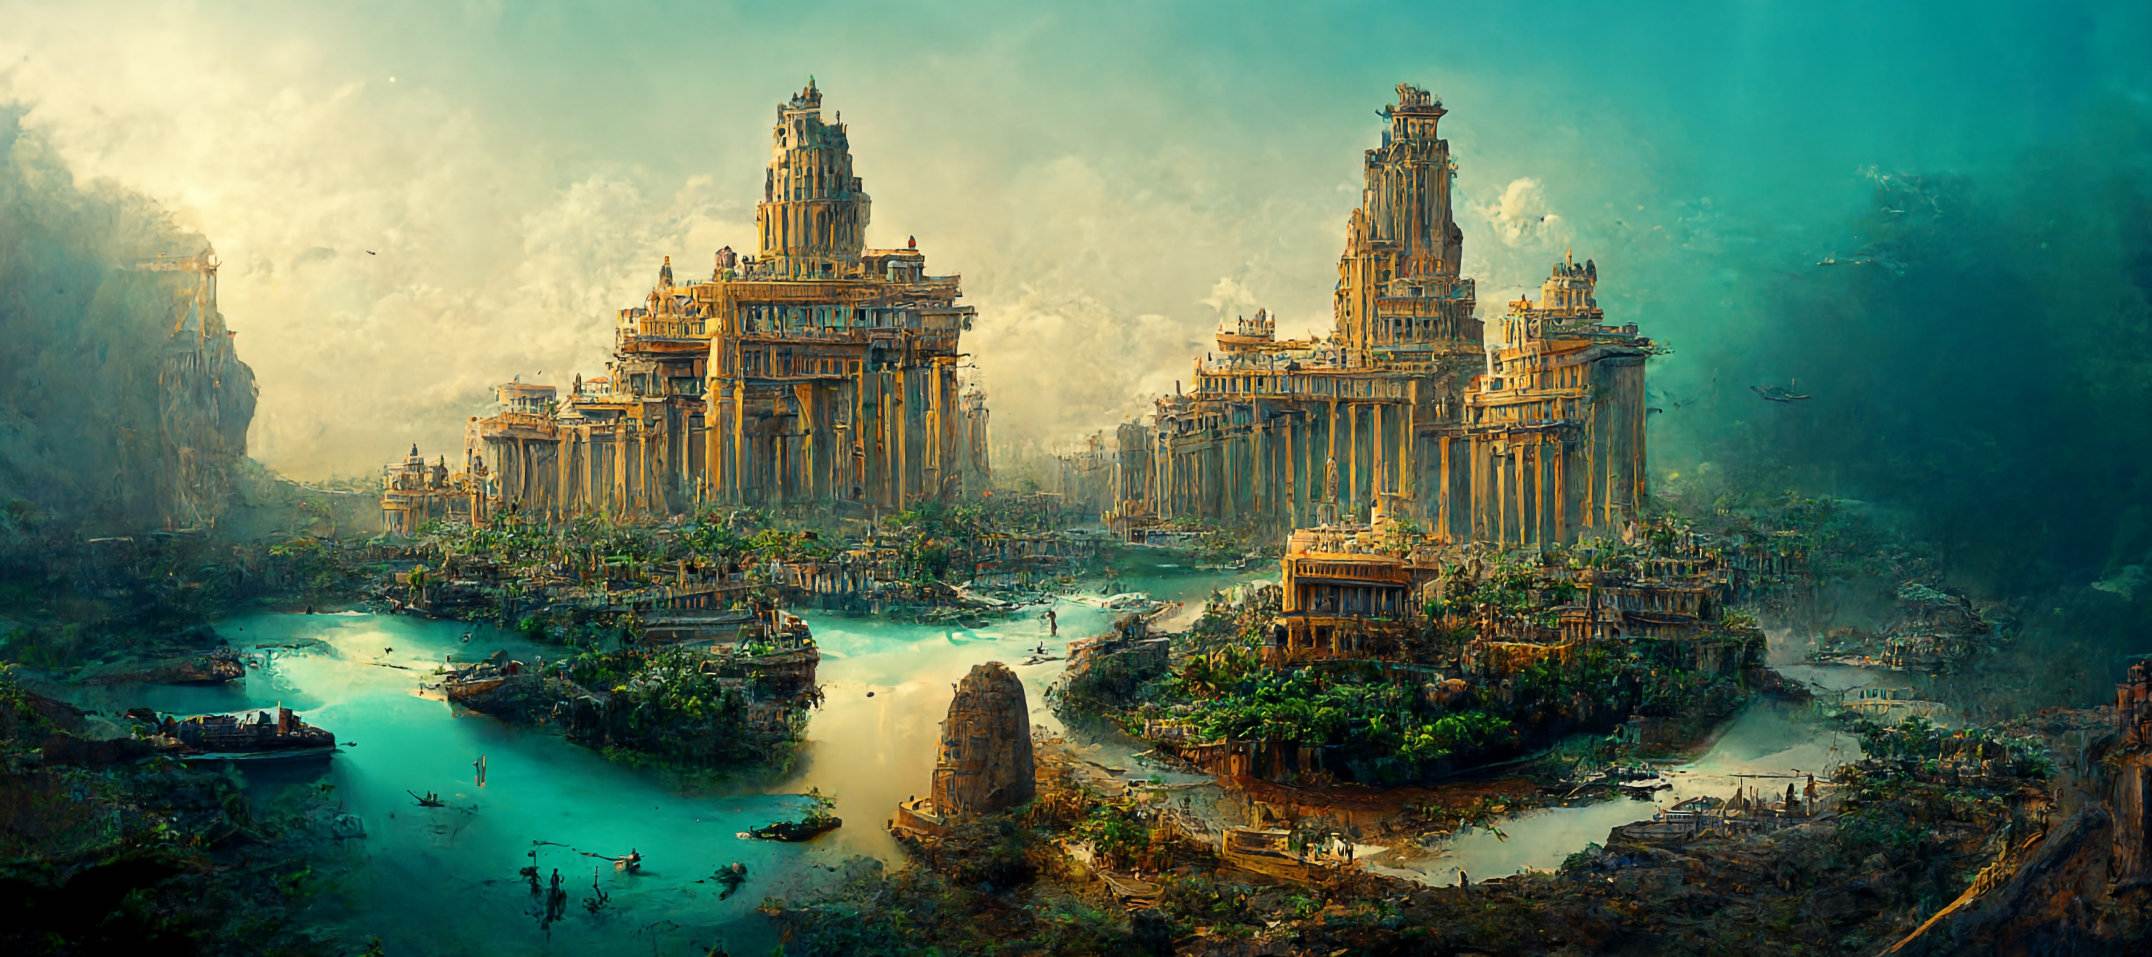 Versunkene Stadt Pavlopetri oder Atlantis: 5,000 Jahre alte Stadt in Griechenland entdeckt 1